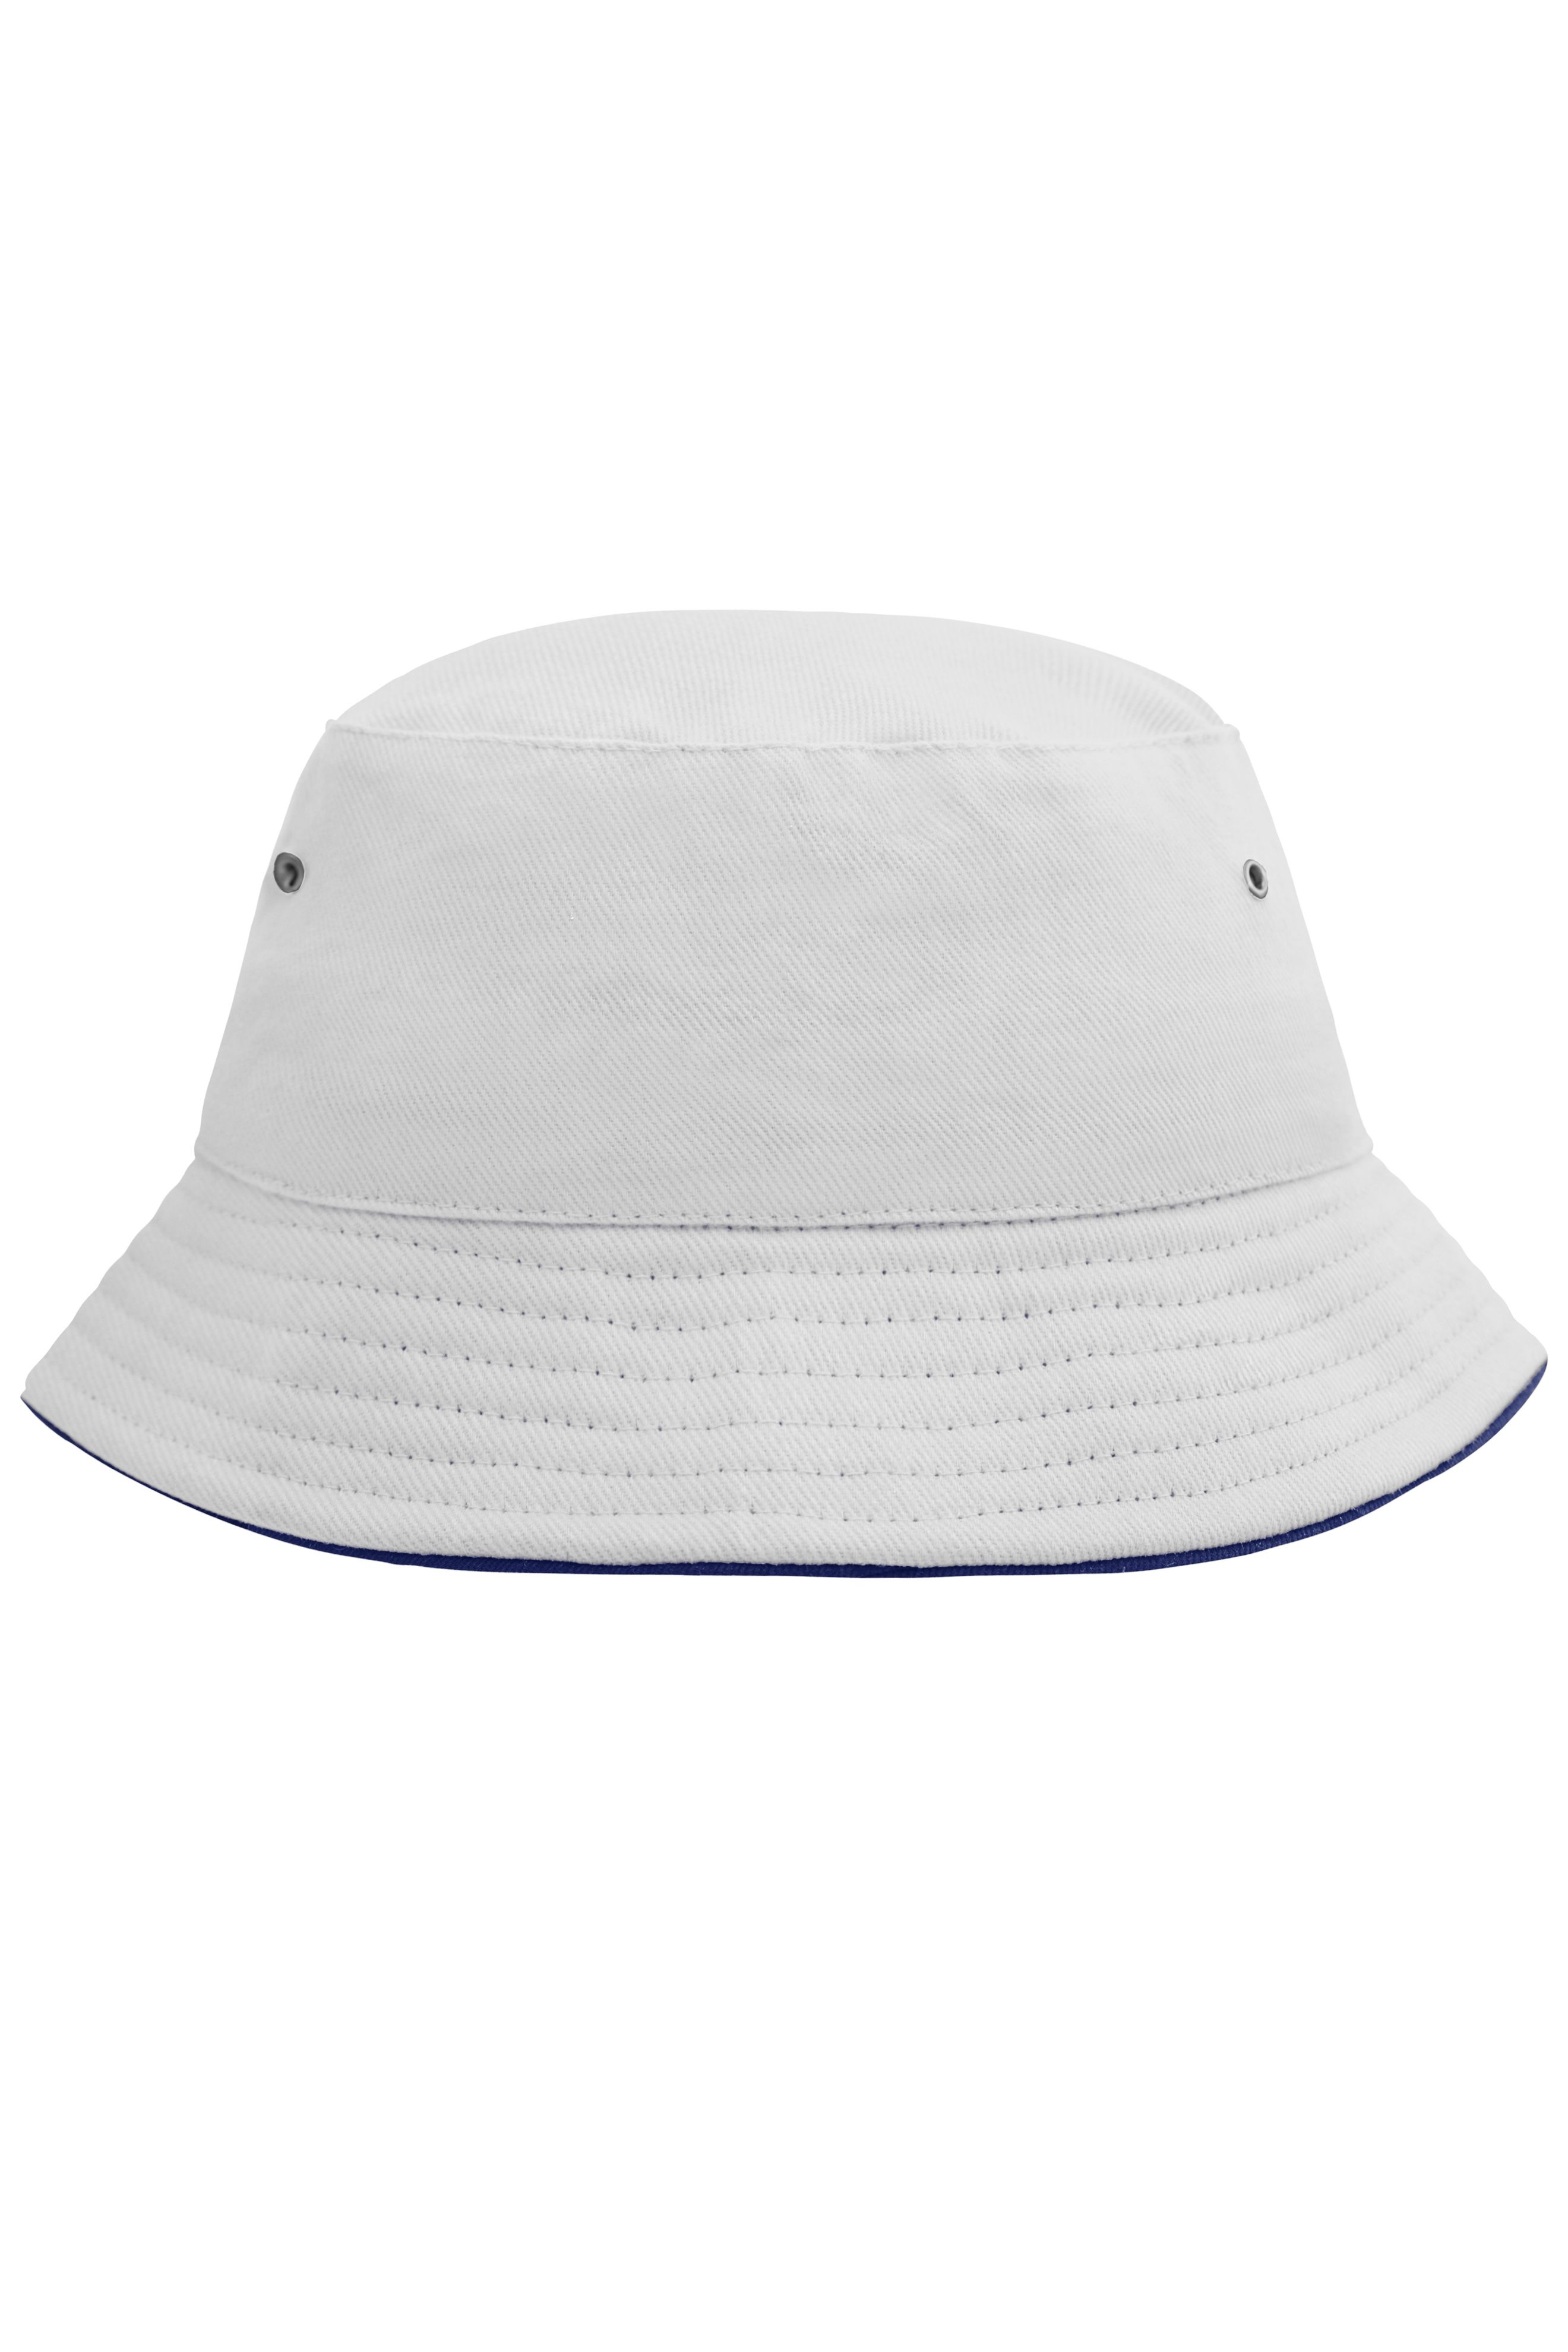 Fisherman Piping Hat for Kids MB013 Trendiger Kinderhut aus weicher Baumwolle